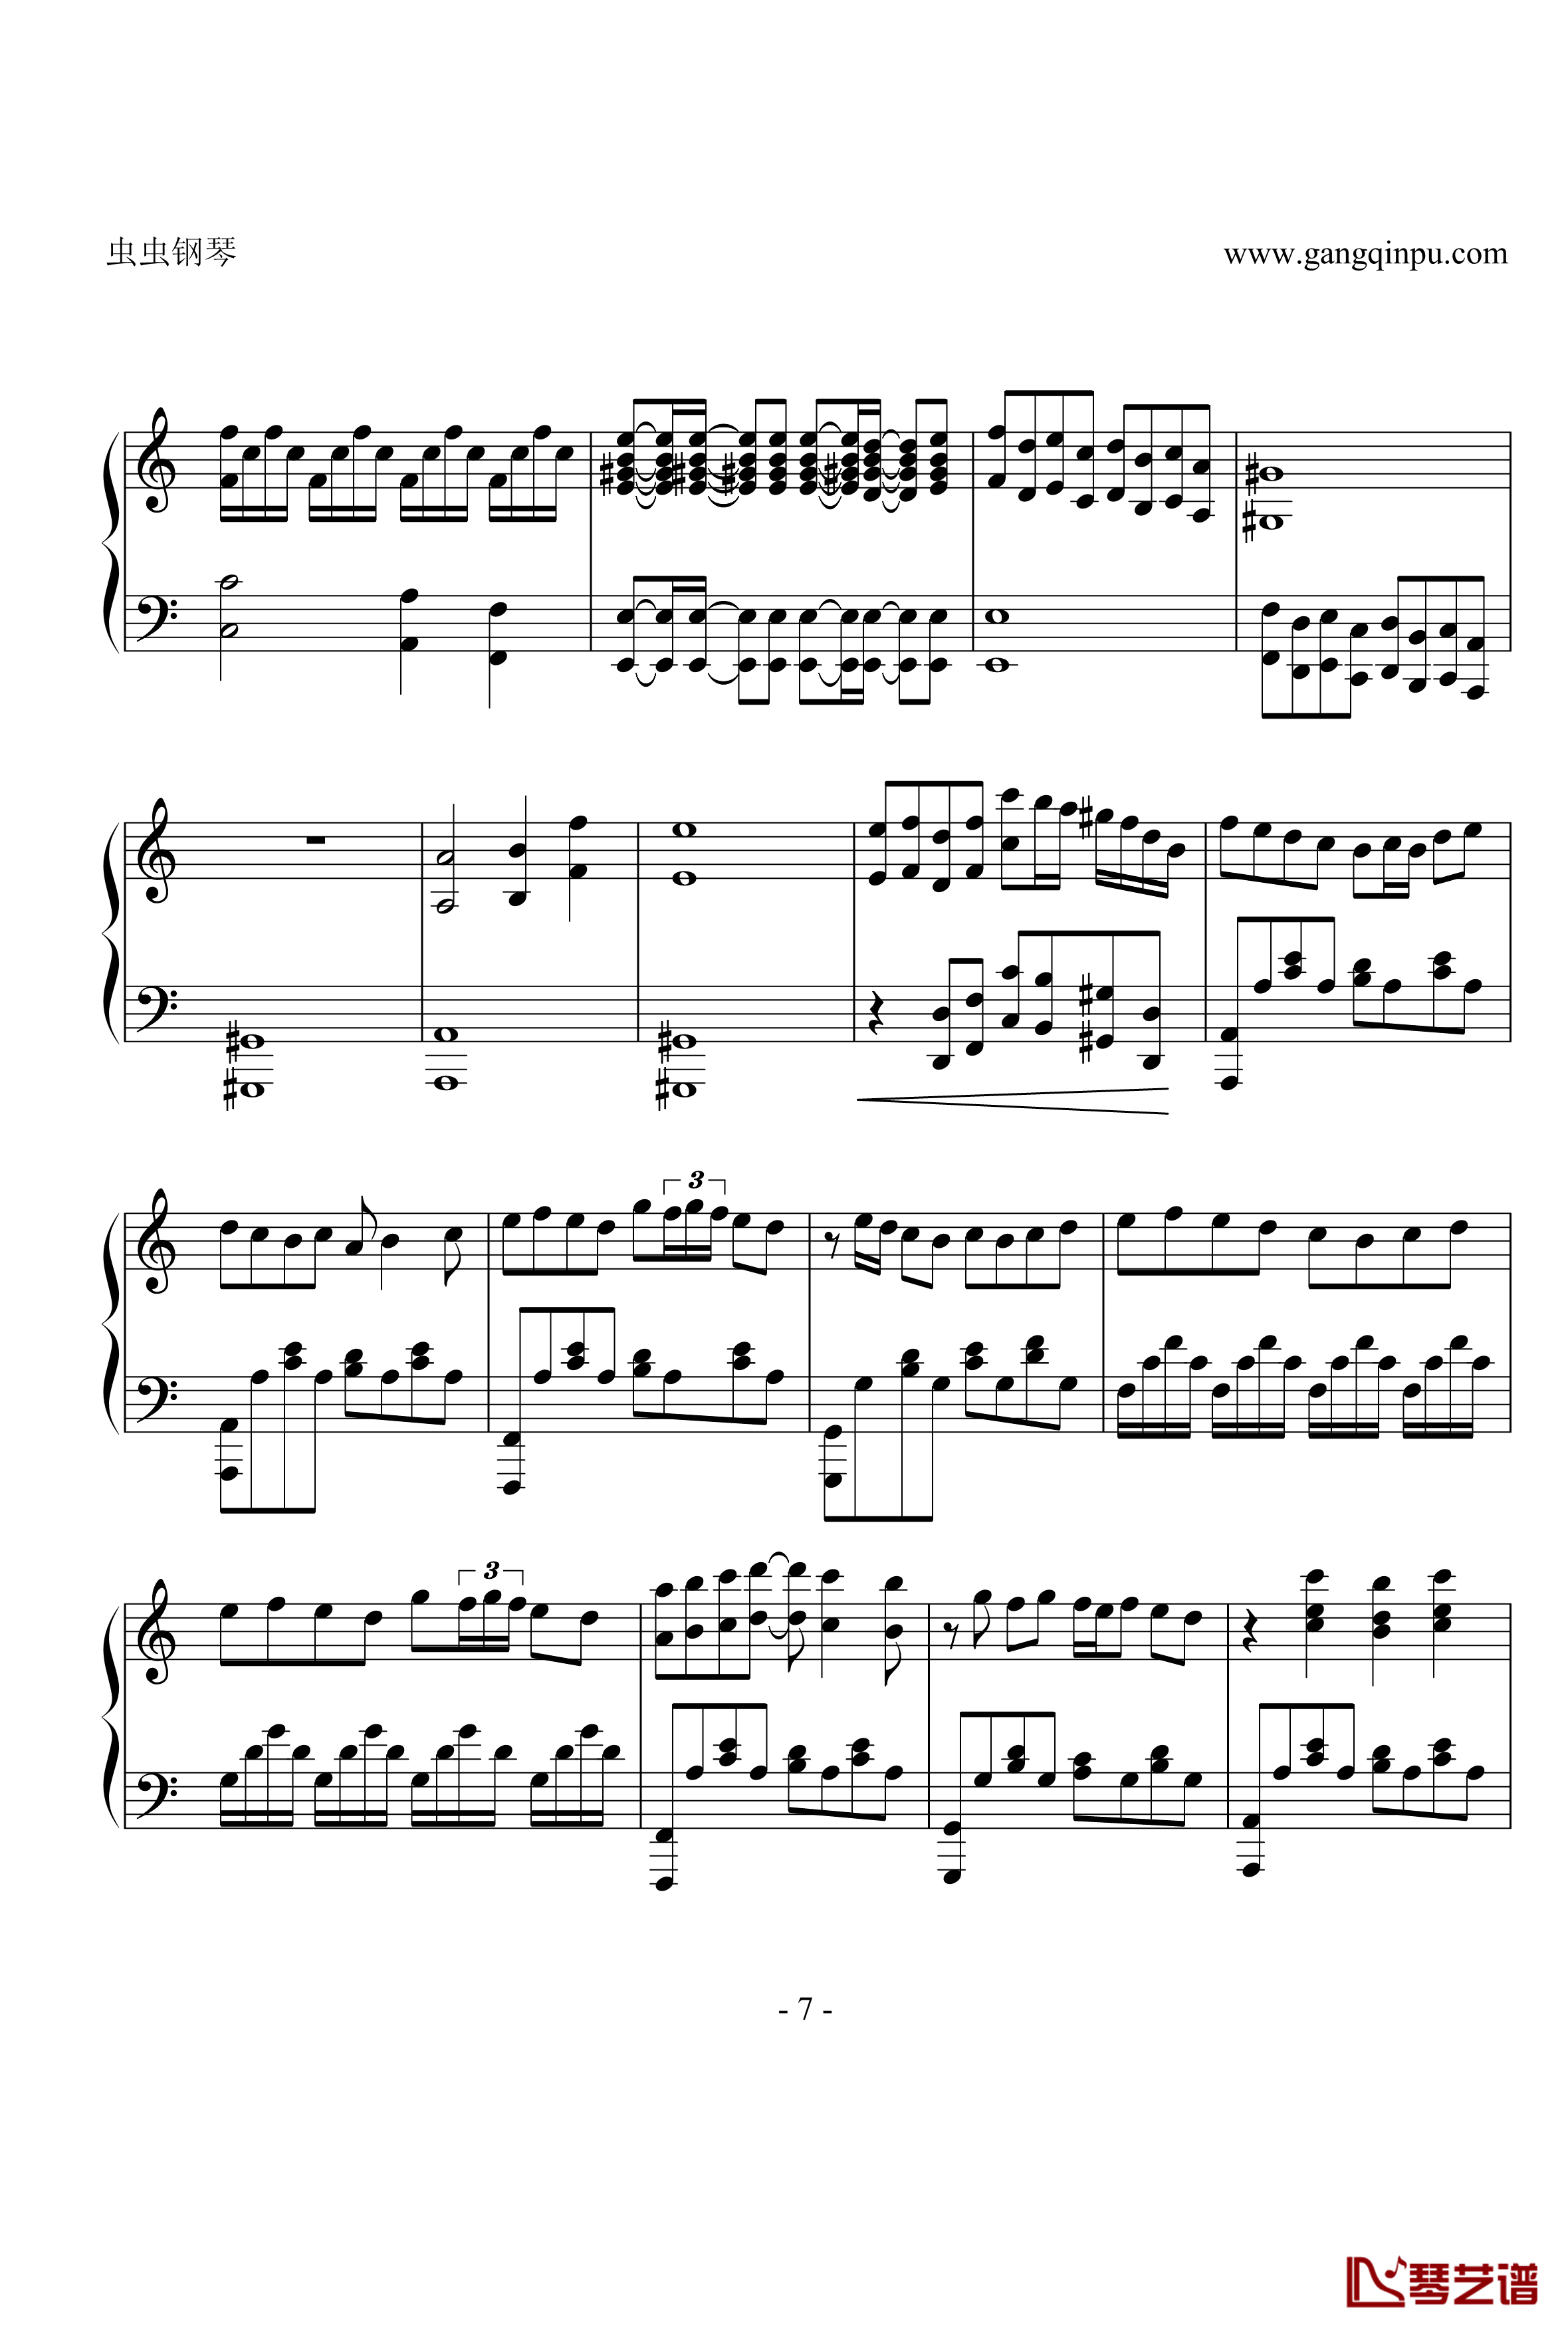 亡灵钢琴钢琴谱-修改版之再版-电锯惊魂7